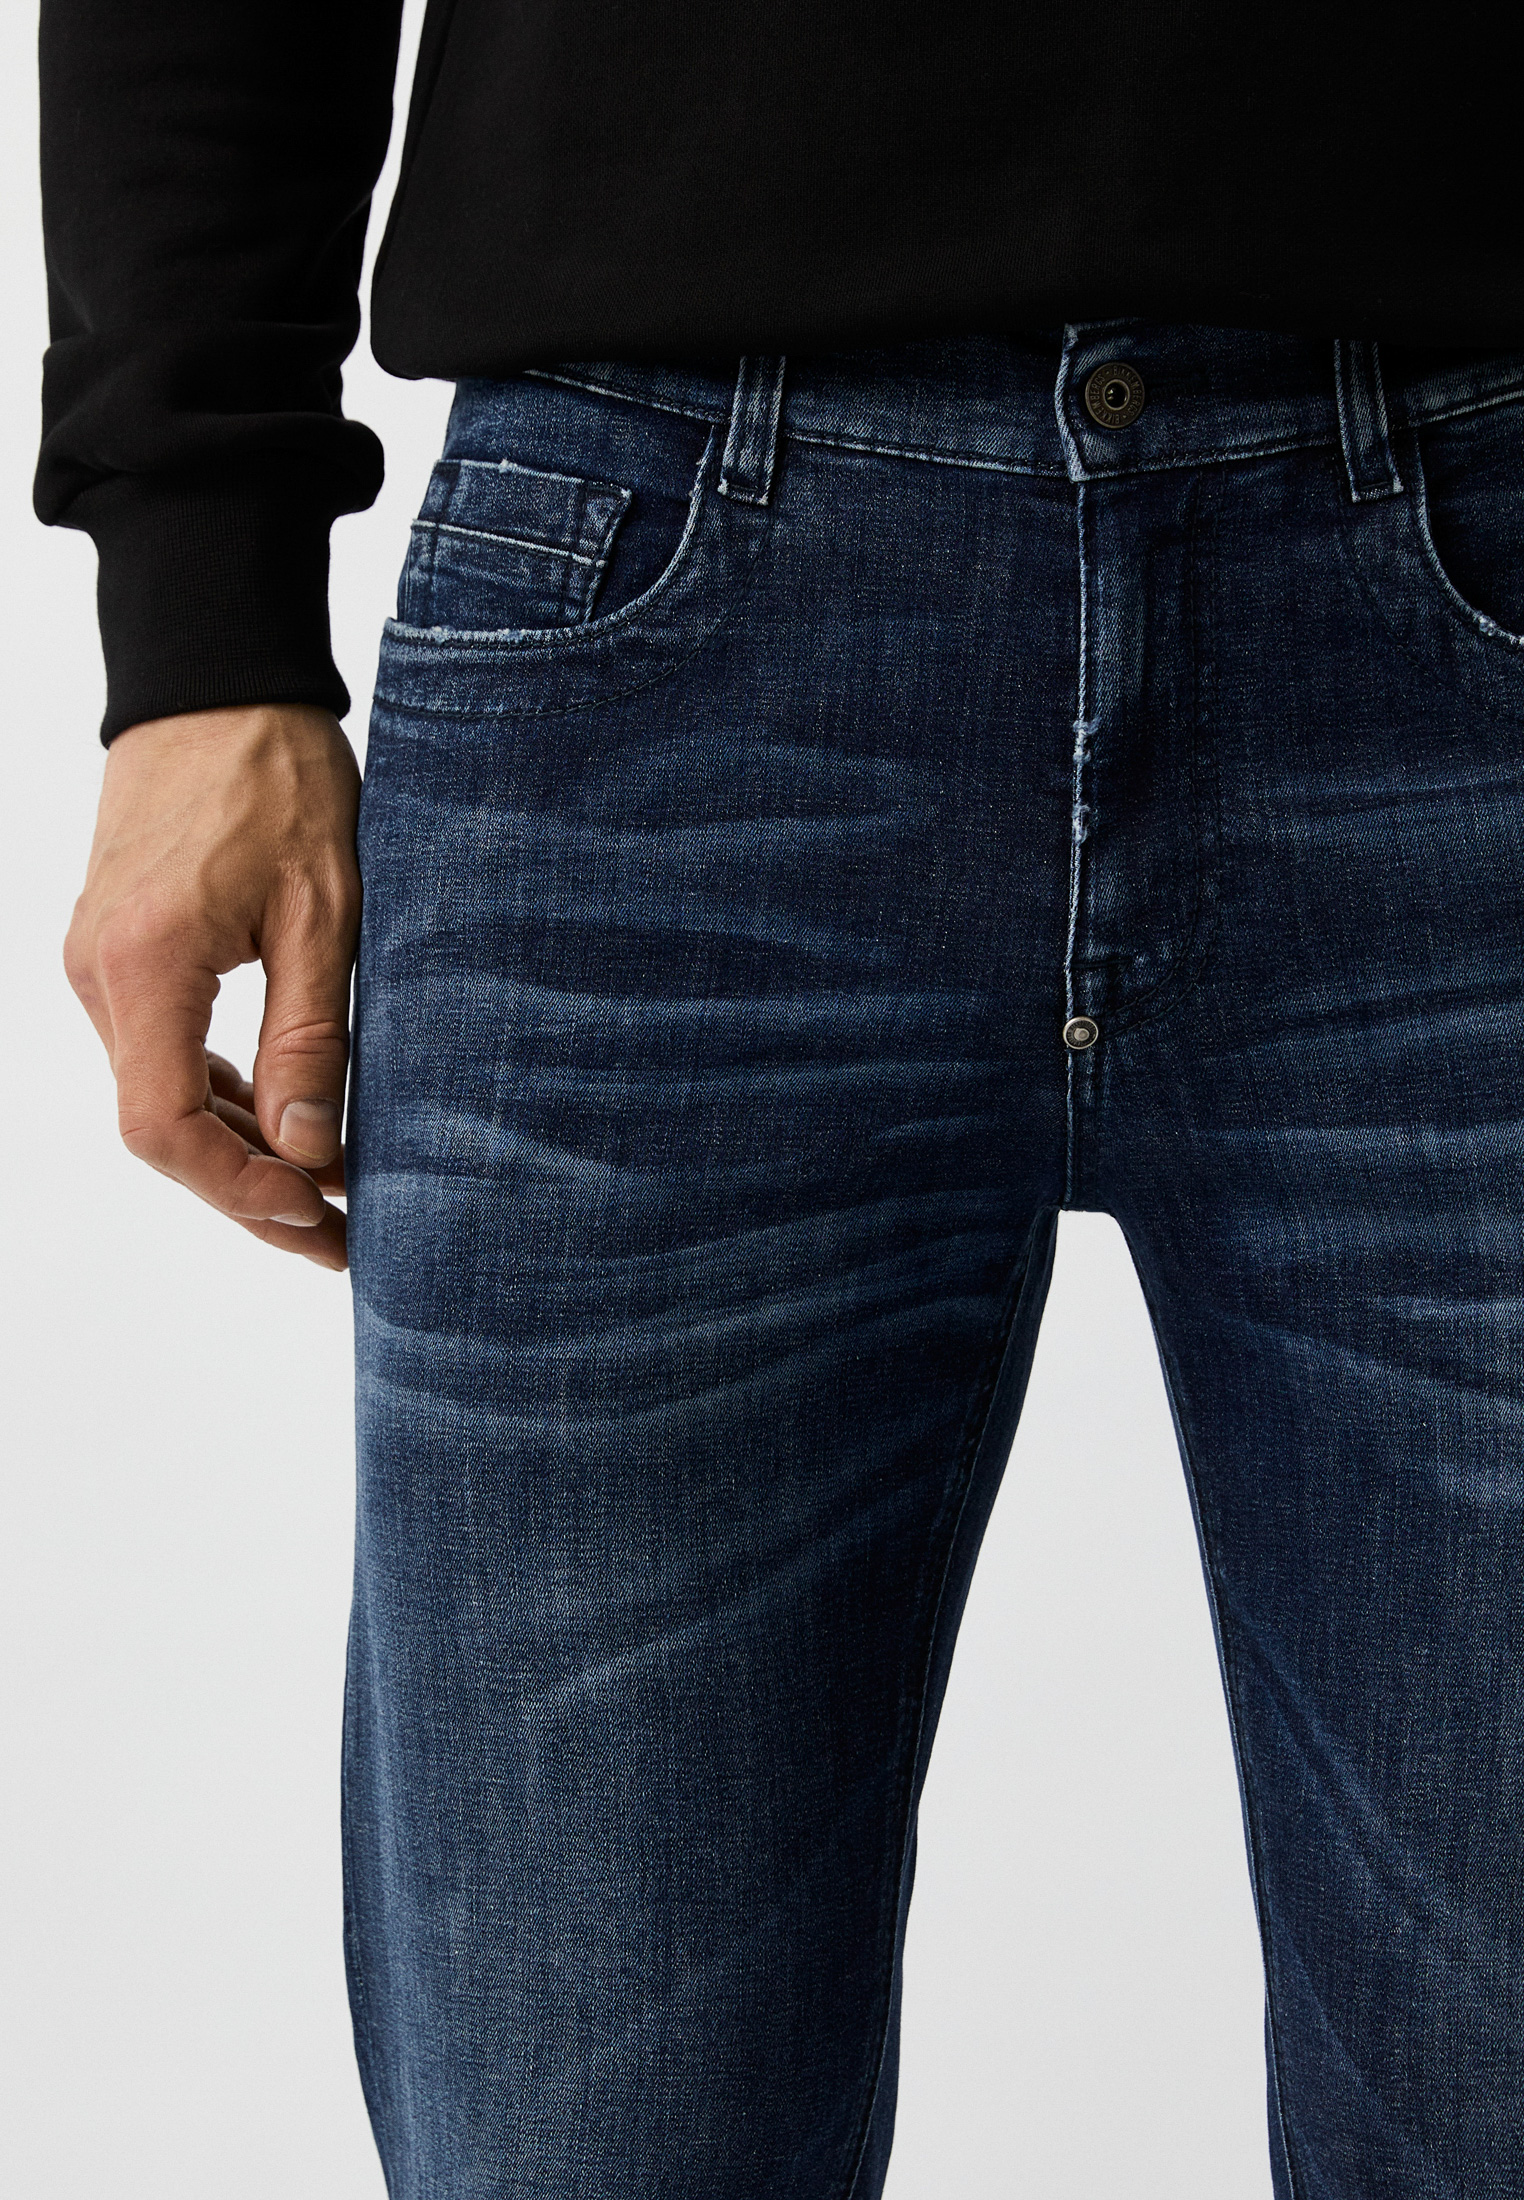 Мужские зауженные джинсы Bikkembergs (Биккембергс) C Q 111 01 S 3511: изображение 8